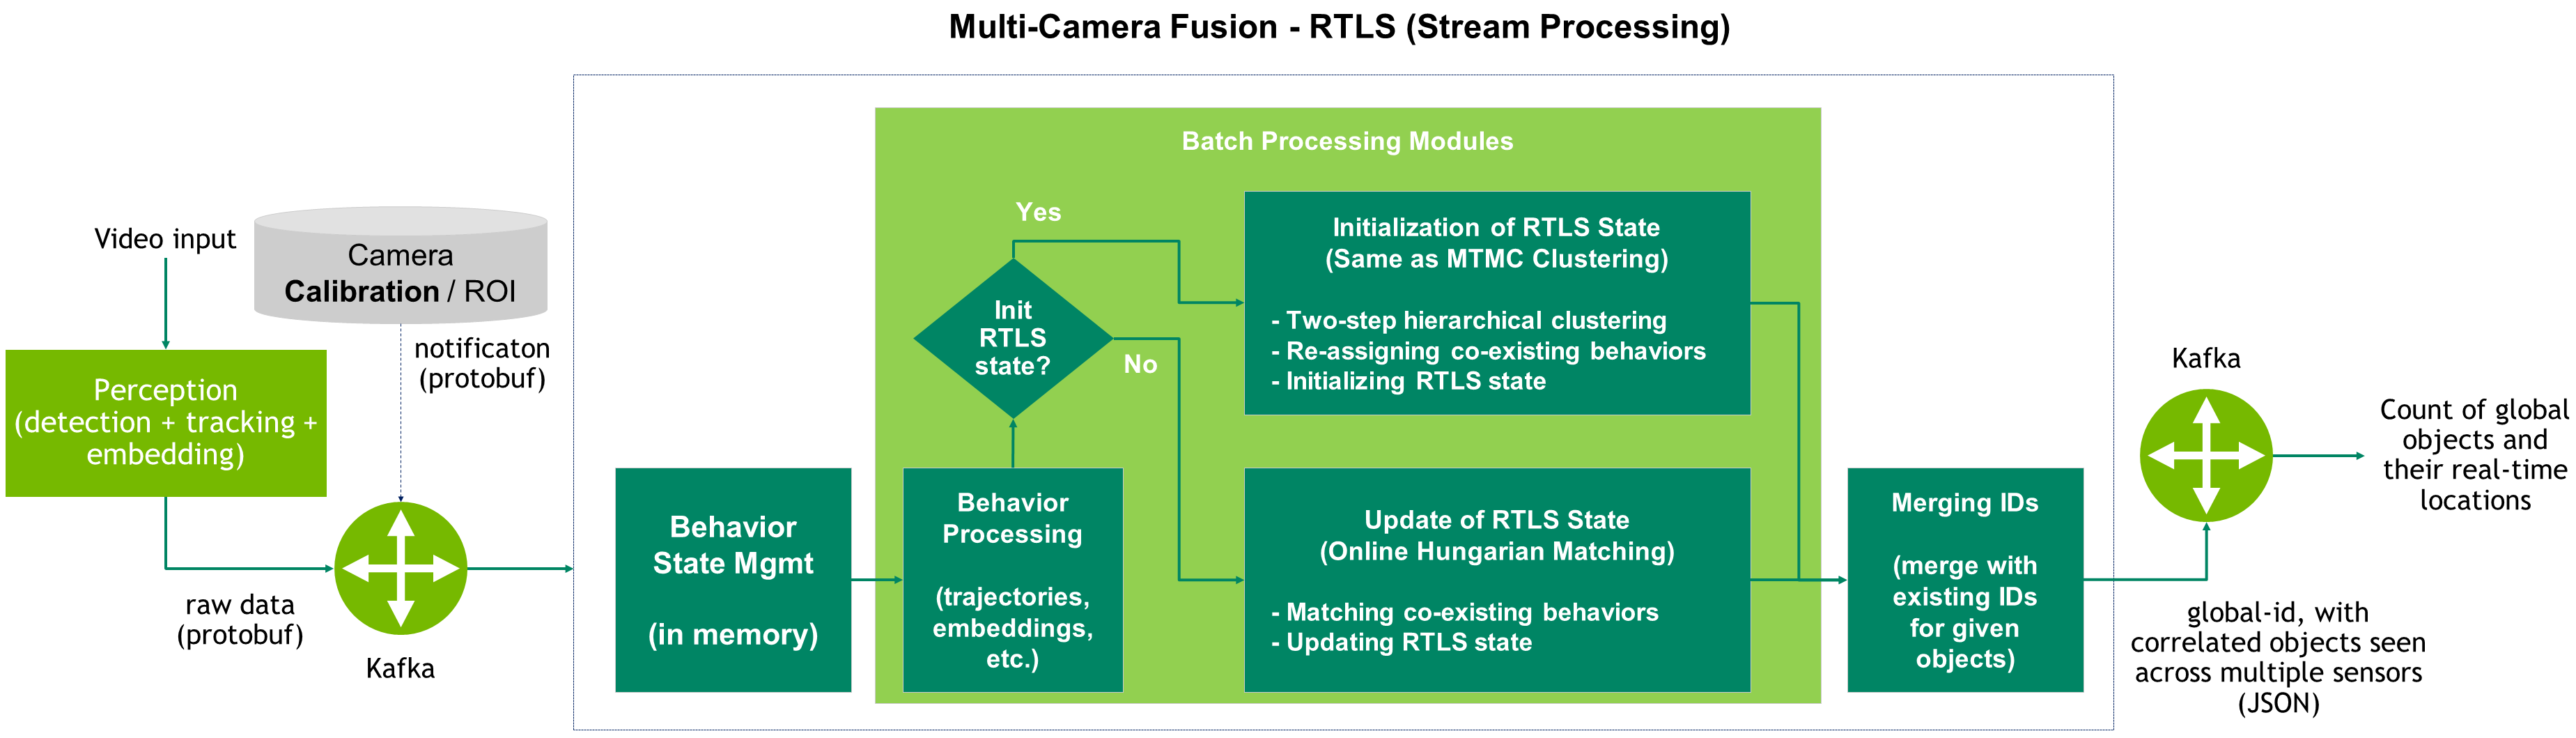 Architecture - Multi-Camera Fusion - RTLS